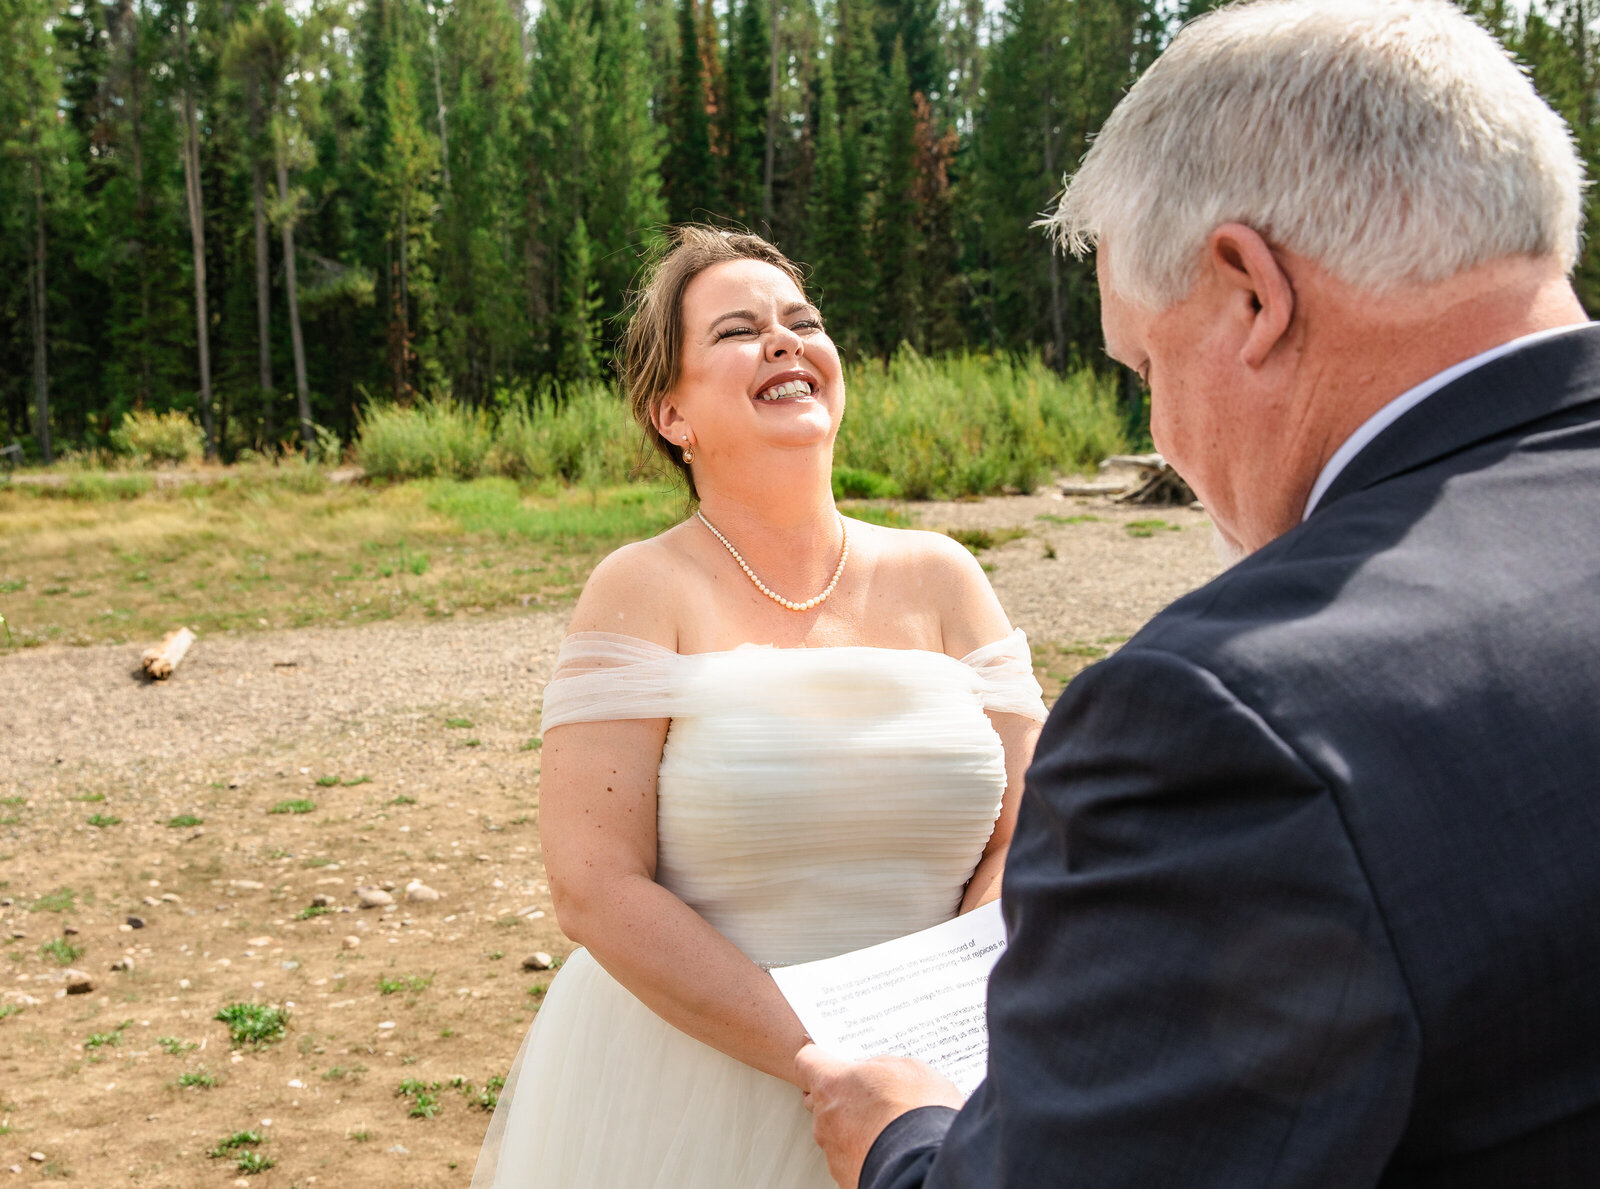 Jackson Hole photographers capture bride laughing during Grand Teton National Park wedding